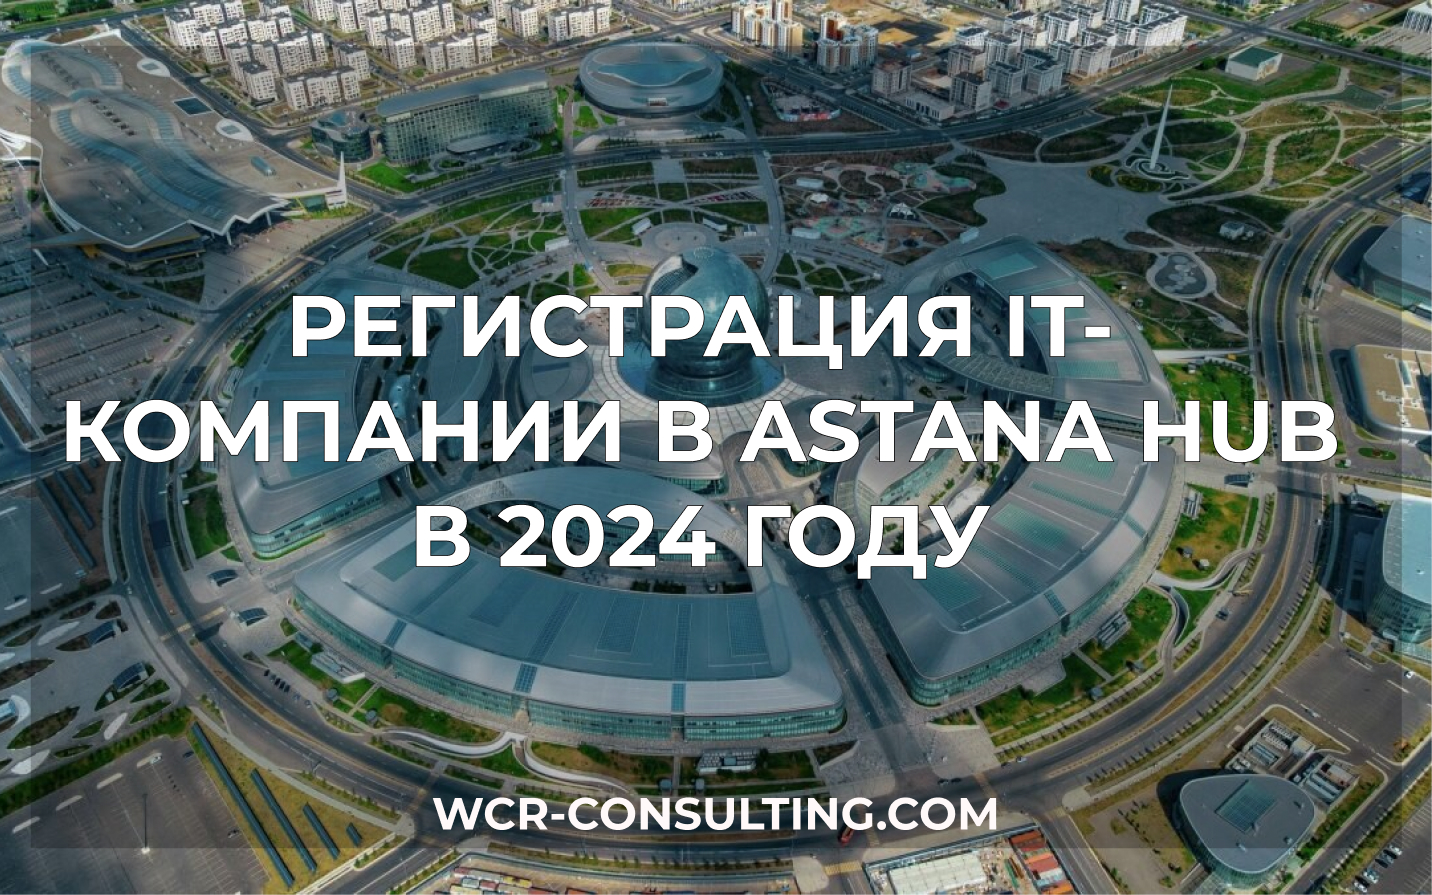 Регистрация IT-компании в Astana Hub в 2024 году.